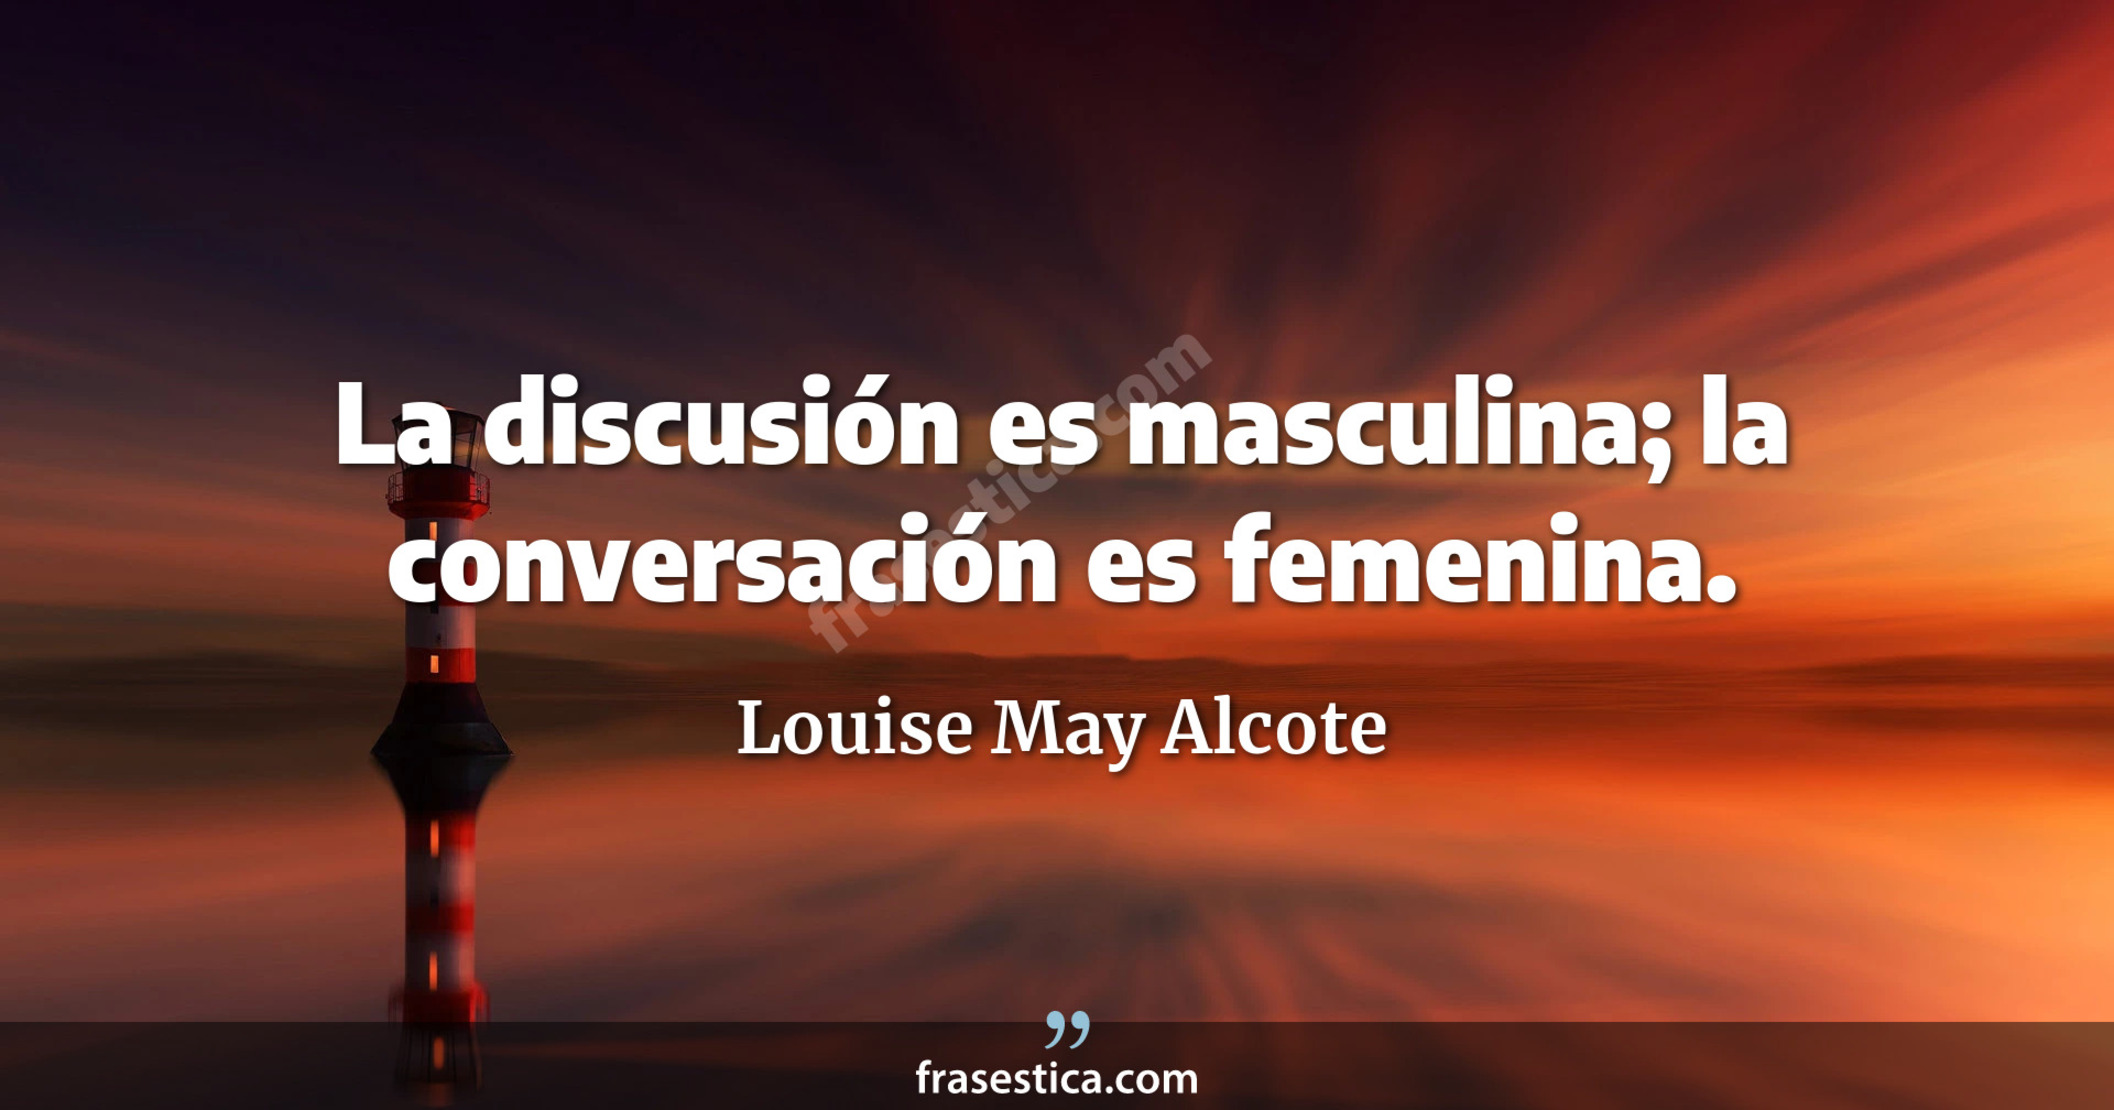 La discusión es masculina; la conversación es femenina. - Louise May Alcote